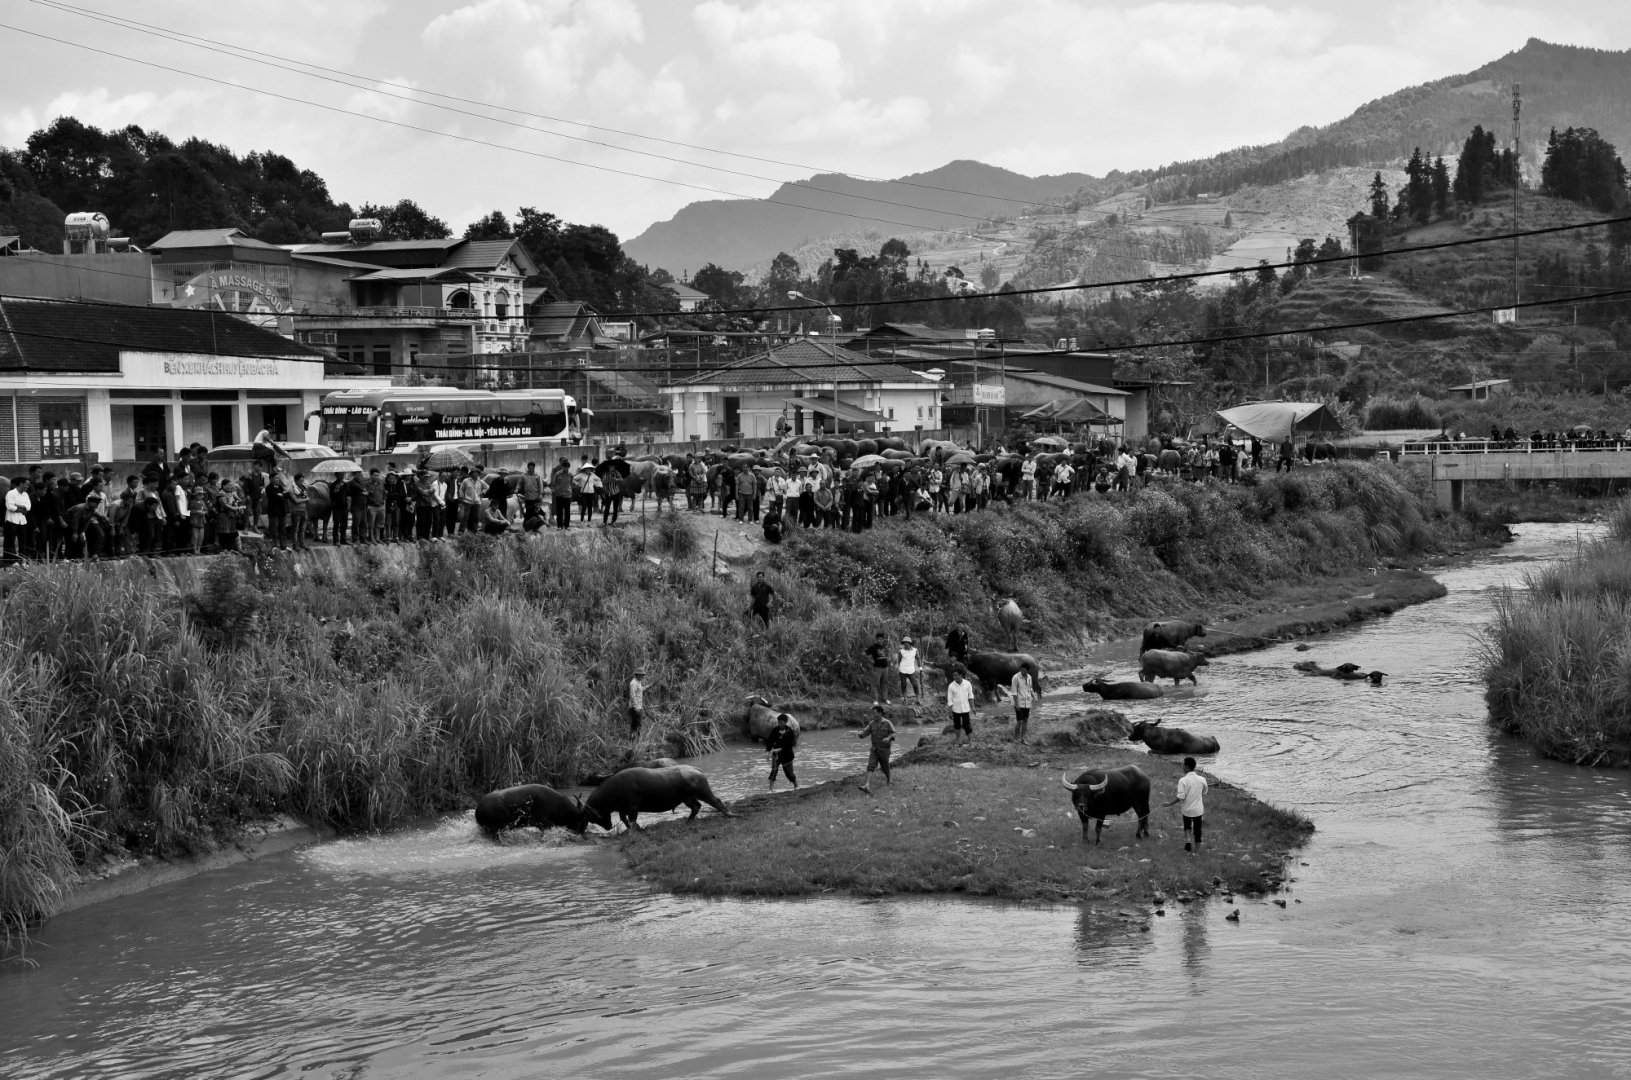 «Вьетнамскую корриду» между водяными буйволами народ хмонгов устраивает ради развлечения и демонстрации силы своих питомцев. Рынок в Бак Ха. Северный Вьетнам